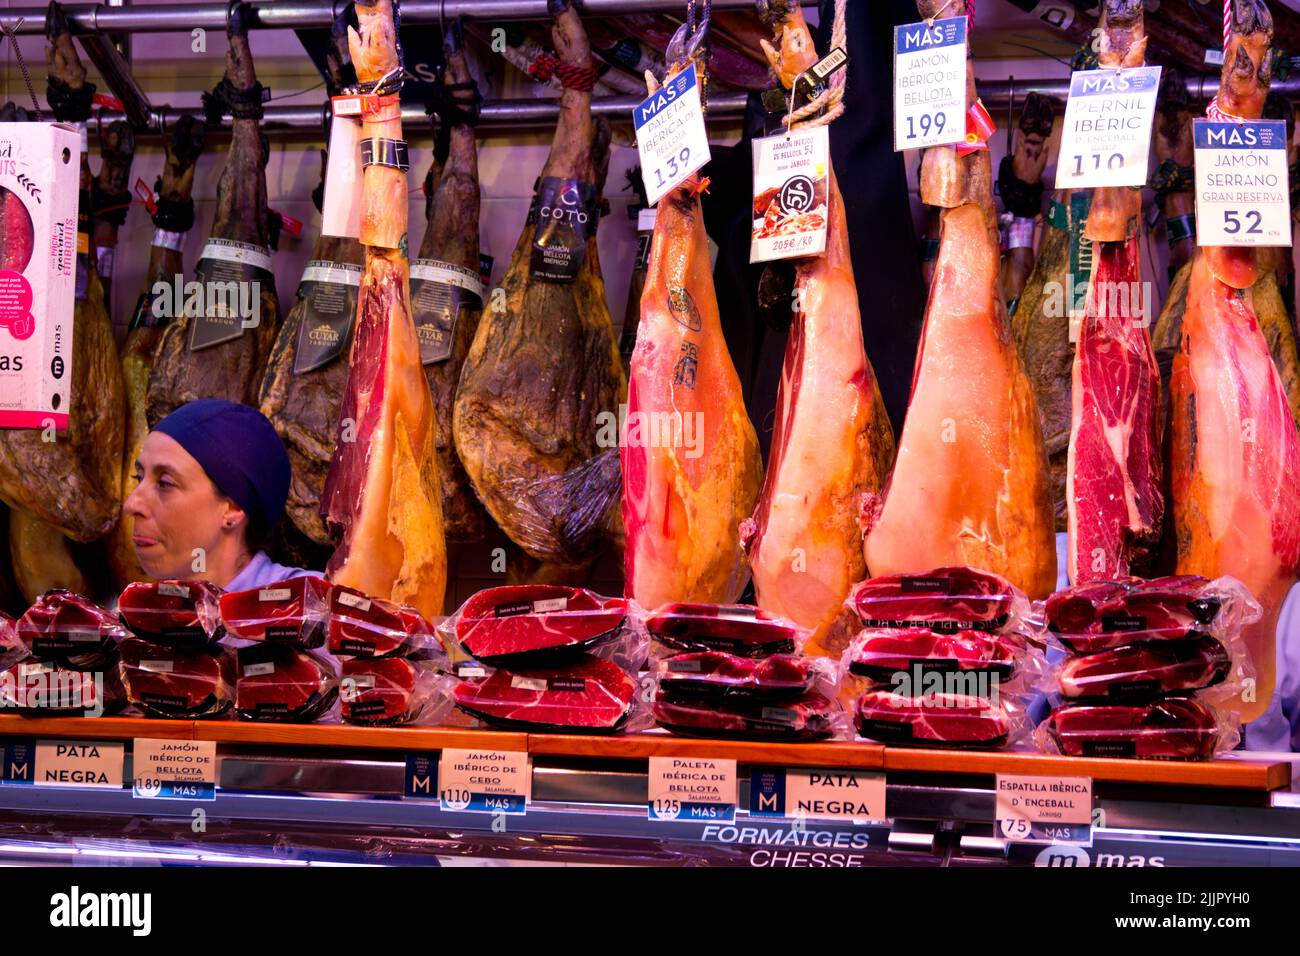 Some cured meats at La Boqueria market in Barcelona Stock Photo